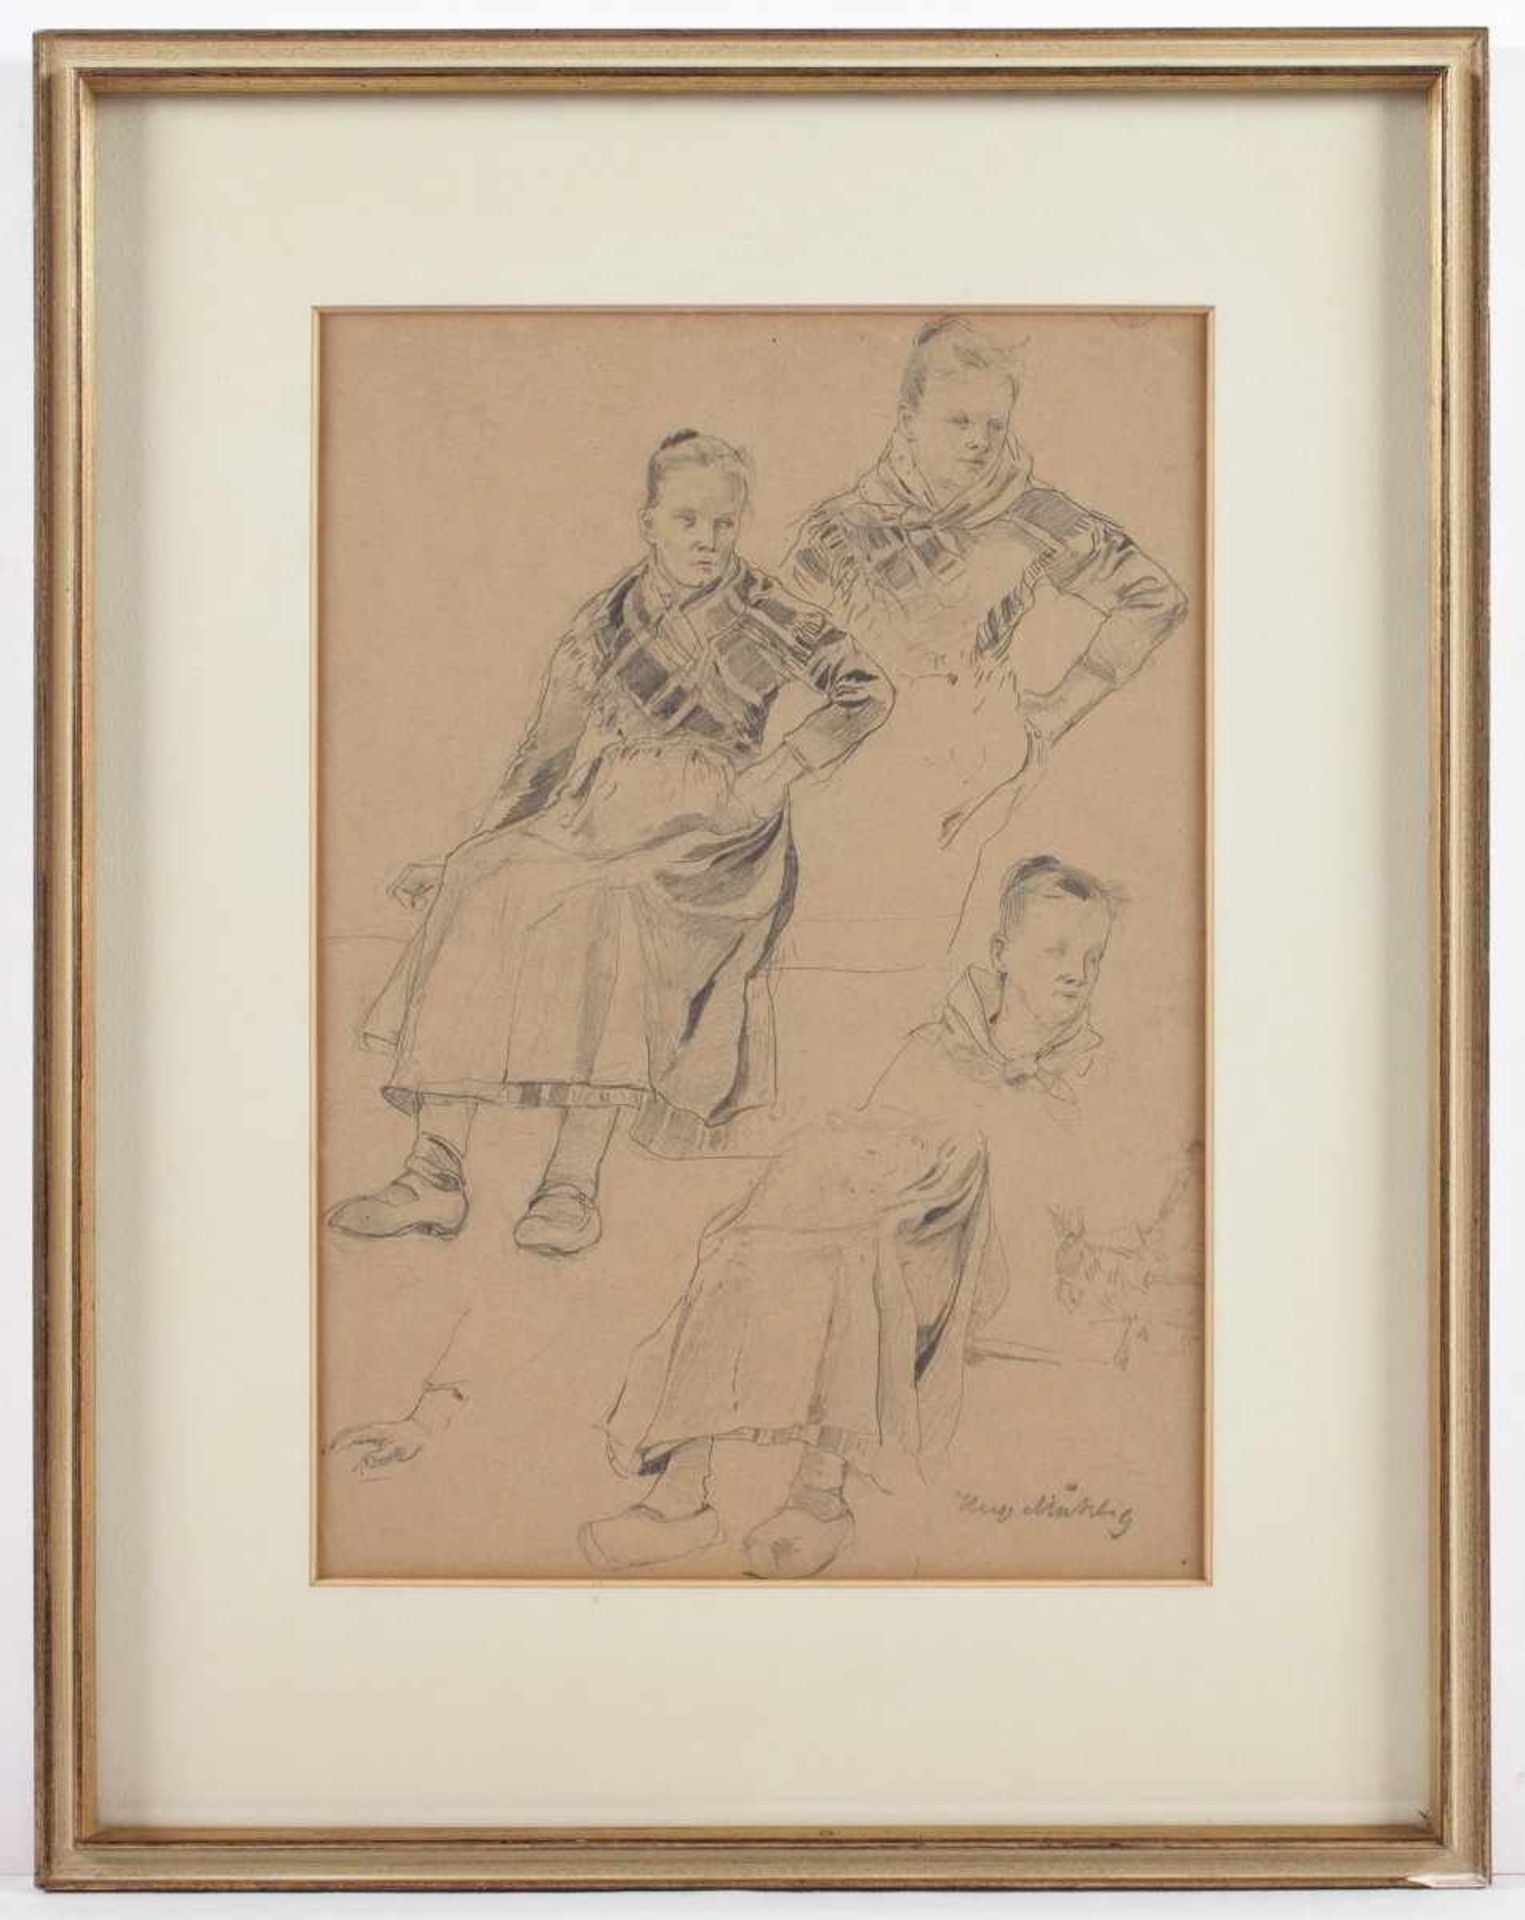 MÜHLIG, Hugo (1854-1929), "Figurenstudie", Bleistift/Papier, 29,5 x 20,5, unten rechts signiert, R. - Image 2 of 2